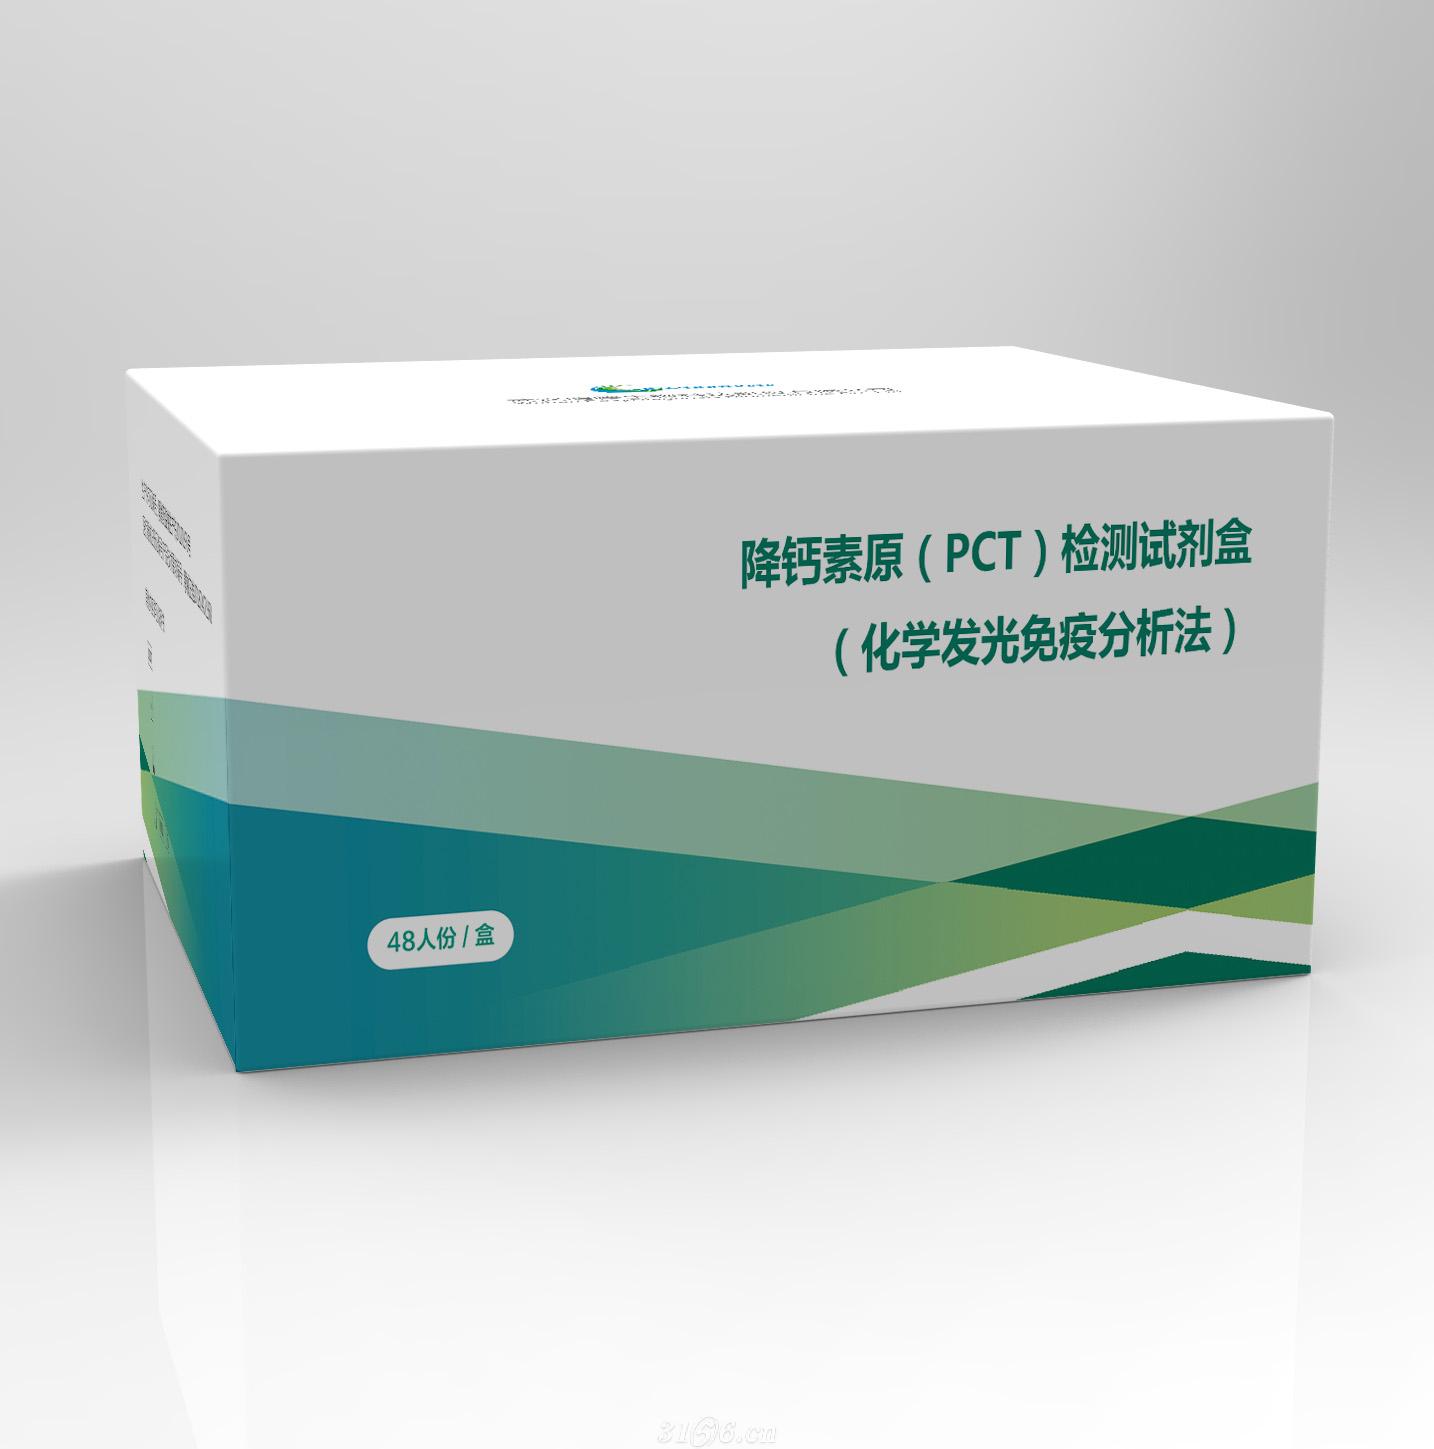 降钙素原（PCT）检测试剂盒（化学发光免疫分析法）招商